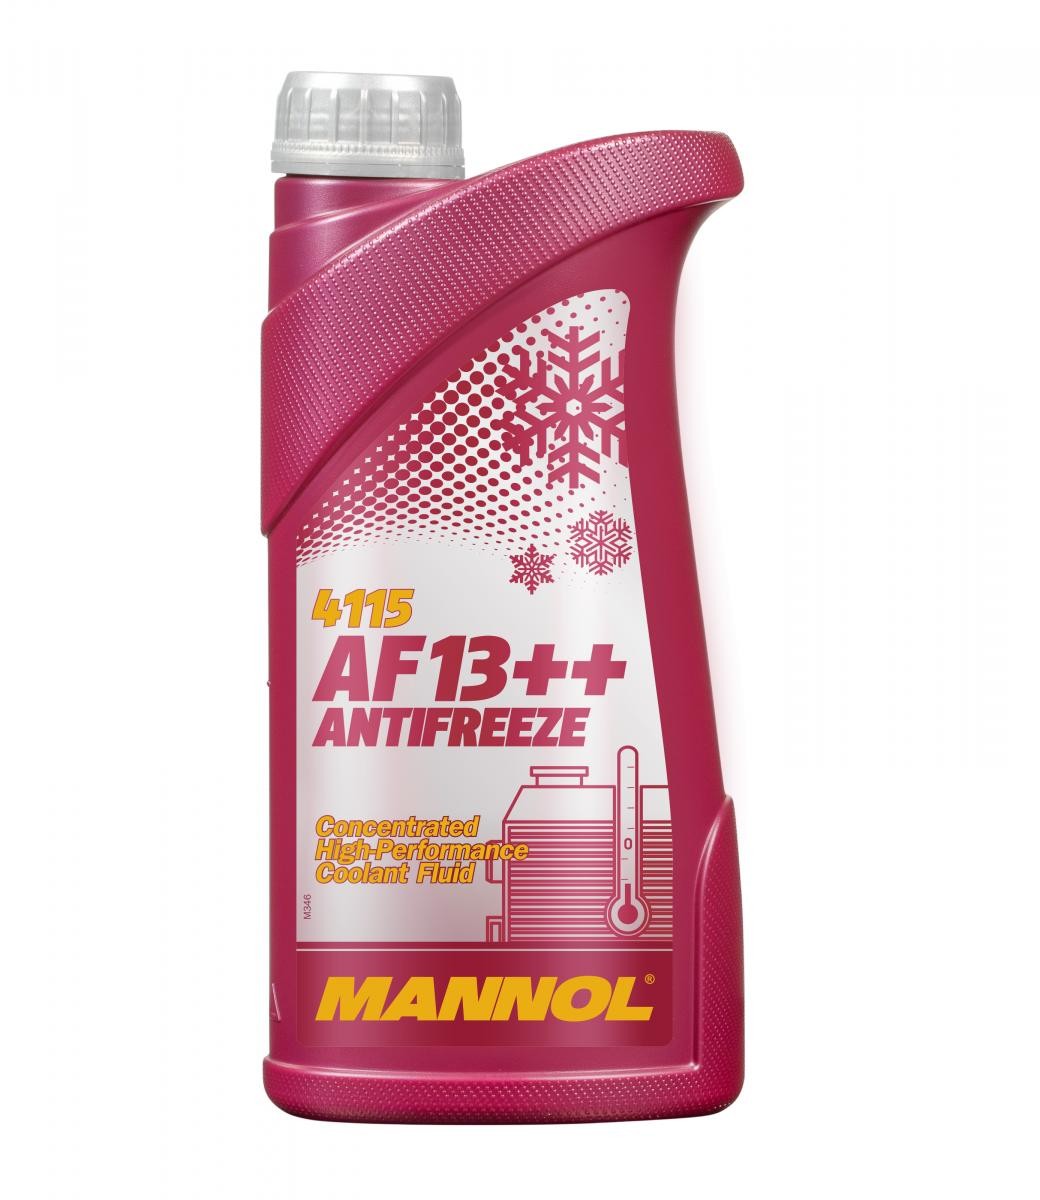 DUCATI HYPERMOTARD Kühlmittel G12 Rot, 1l, -38(50/50) MANNOL AF13++, High-performance MN4115-1